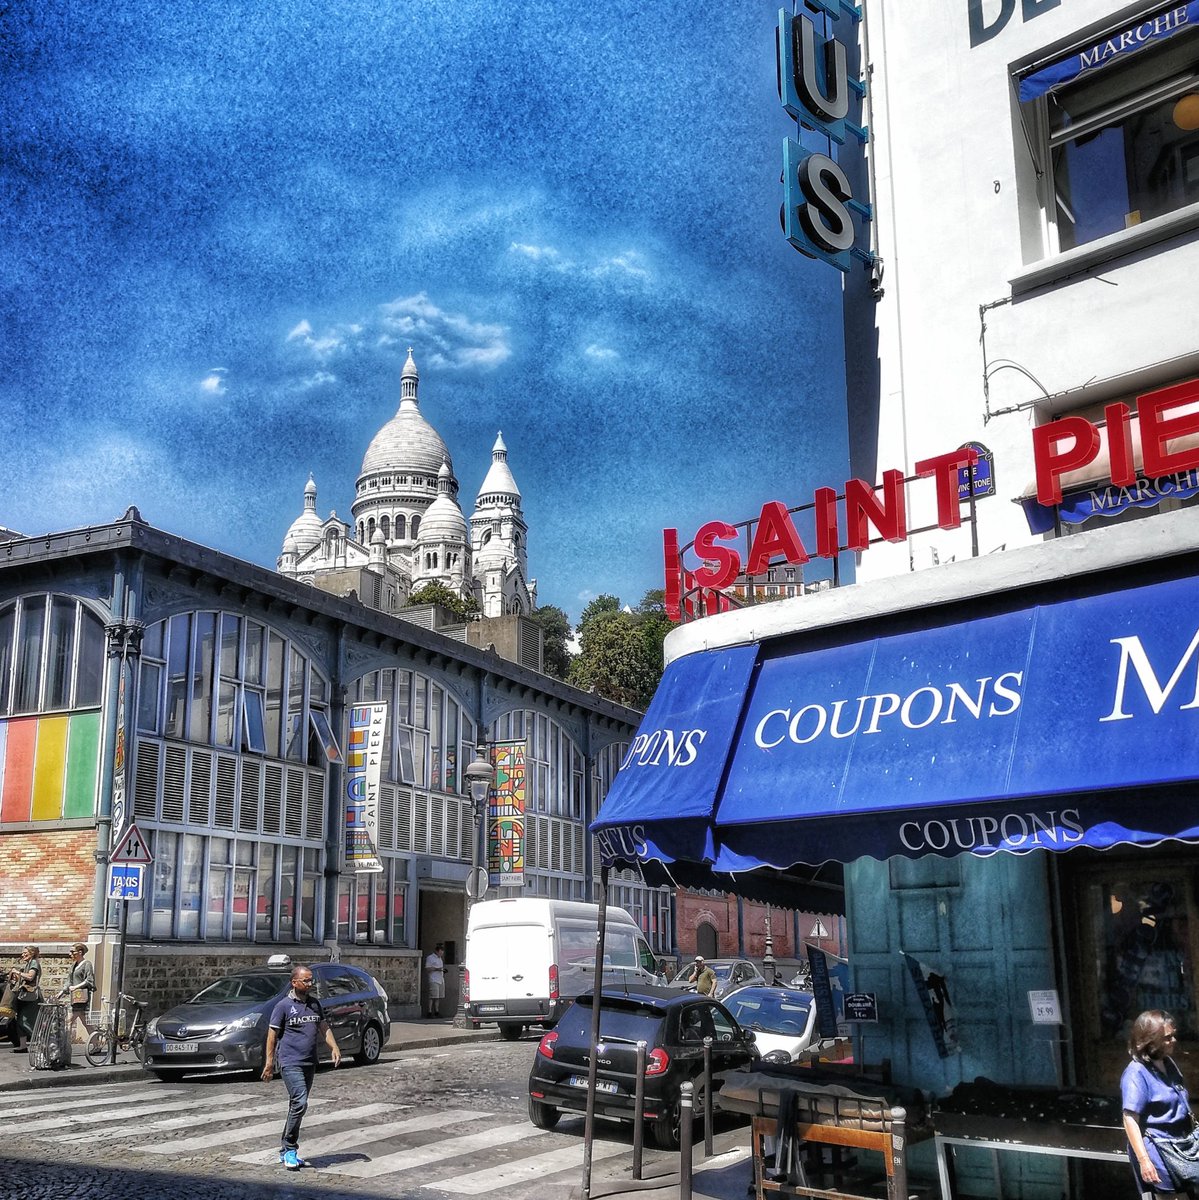 Petite balade à #Montmartre du côté du fameux marché Saint Pierre 😎
Bon week-end 🌞🌞🌞
_____
#sacrecoeur #Paris #france #parisjetaime #photography #photooftheday #PHOTOS #igers #huaweishot #huawei #summer #summertime #Travel #travelblogger